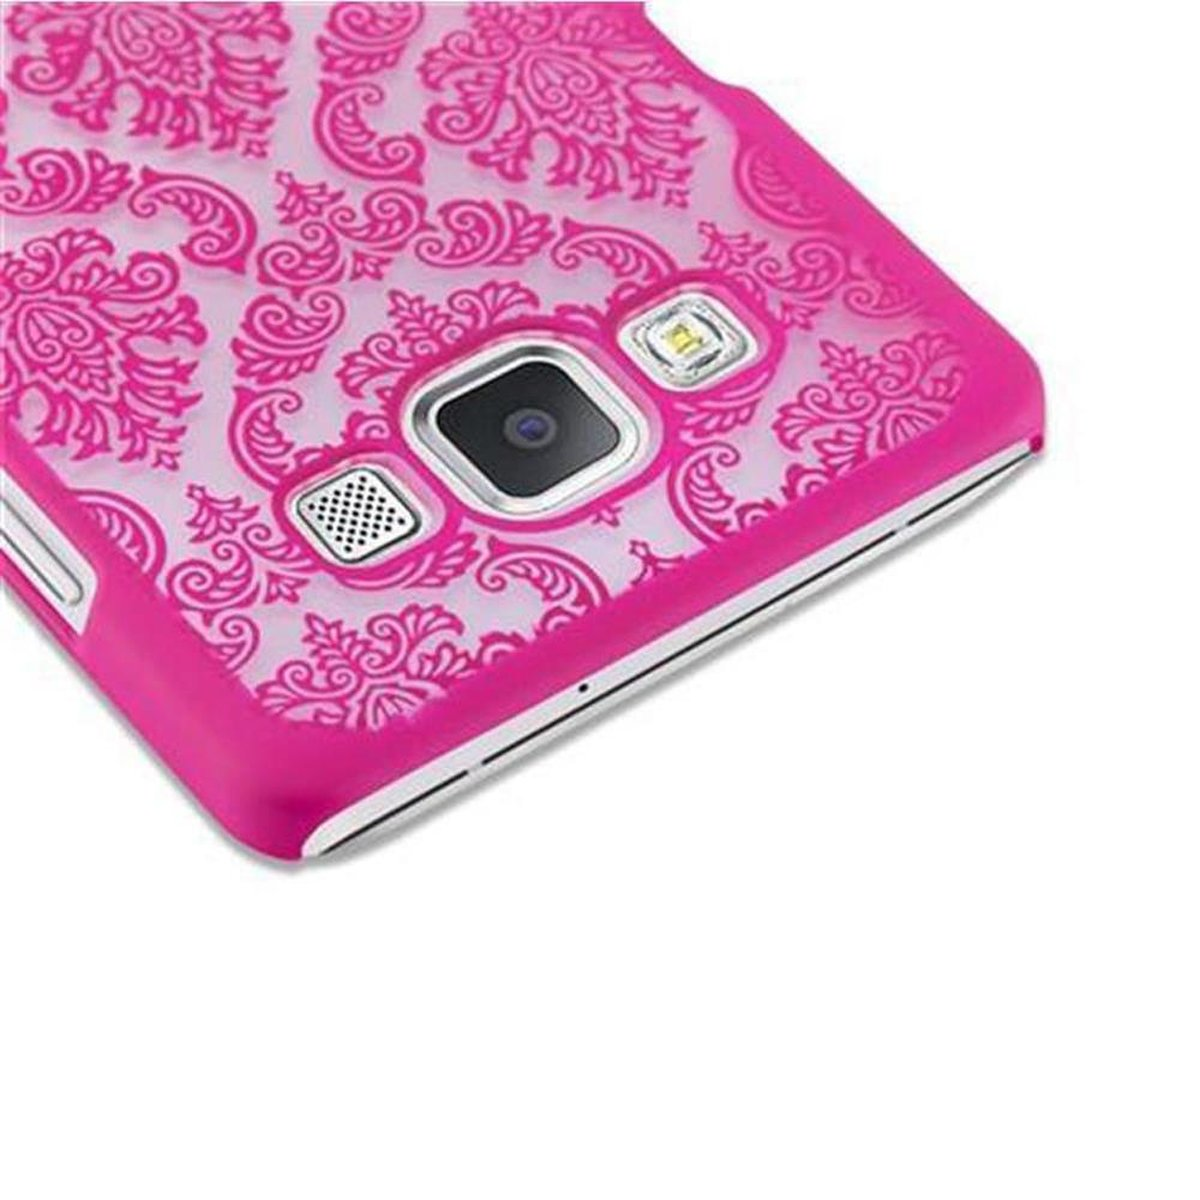 Henna Paisley Backcover, in Design, Galaxy Case Hülle PINK CADORABO Hard A5 Samsung, Blumen 2015,